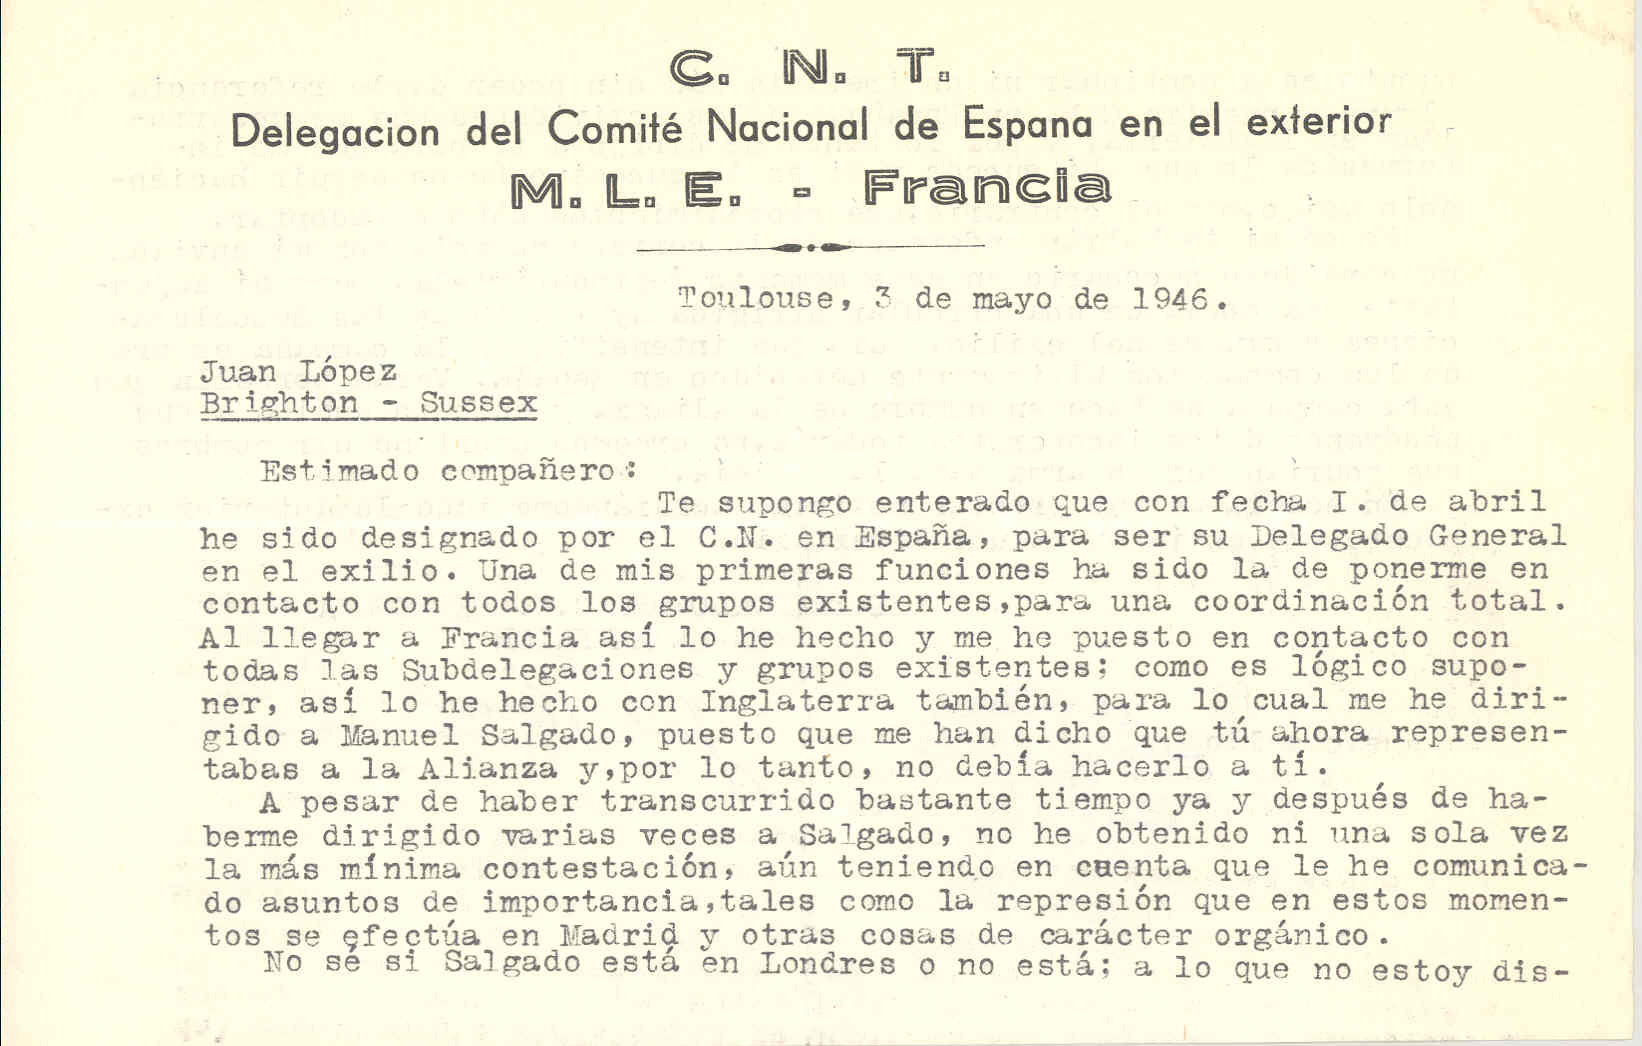 Carta de José Penido en la que le anuncia que ha sido designado para ser Delegado General en el exilio del Comité Nacional de CNT de España